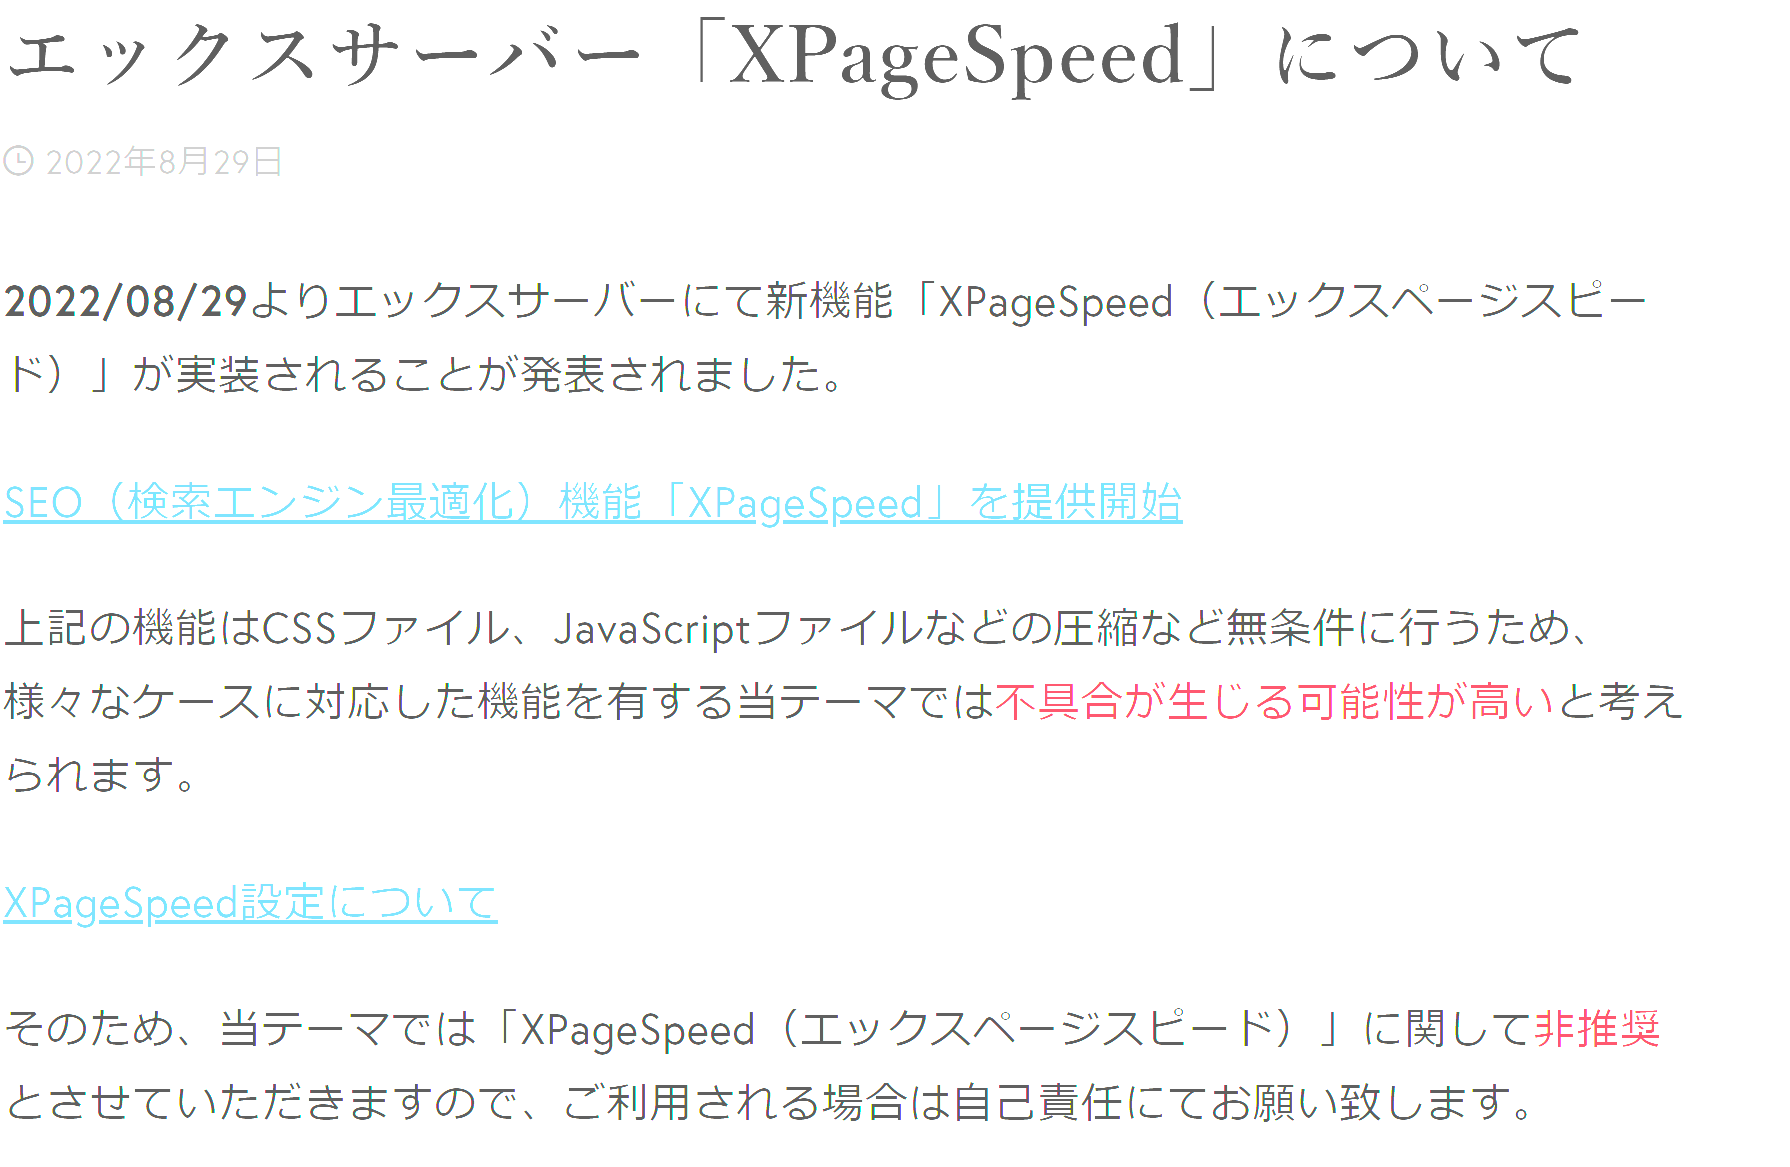 Affinger環境ではXPageSpeedの導入は非推奨となっている